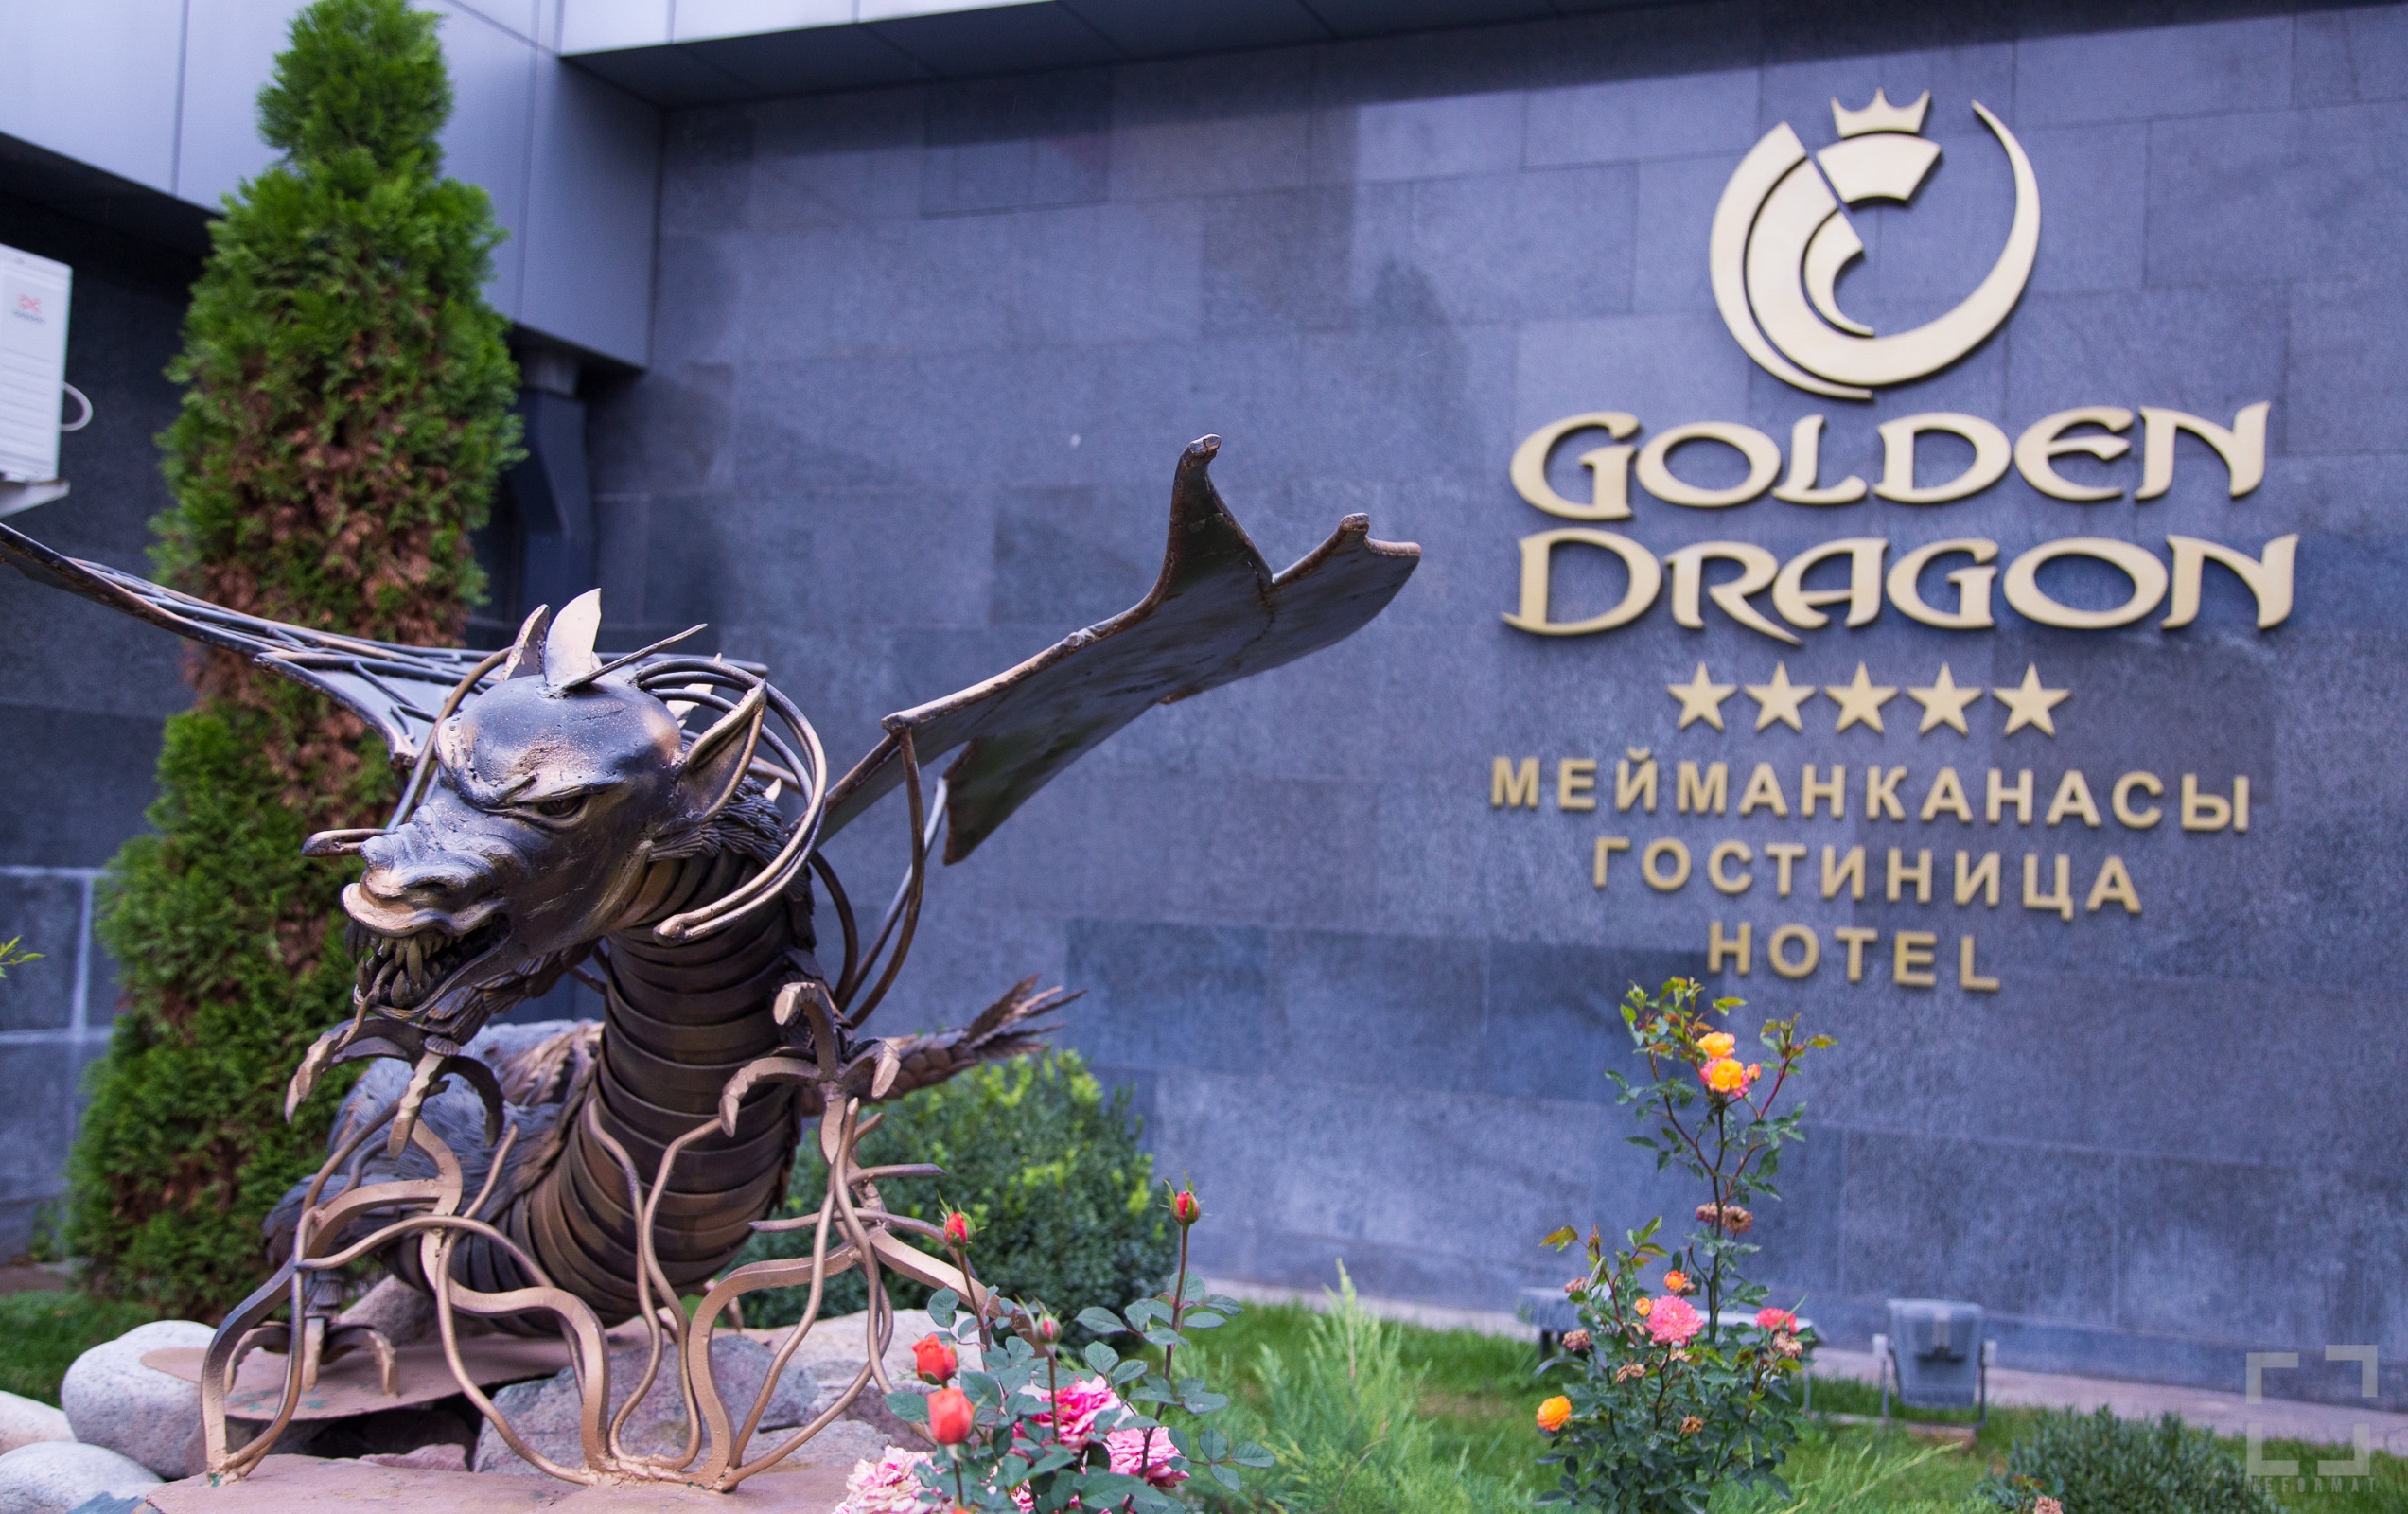 GOLDEN DRAGON HOTEL (Bischkek)